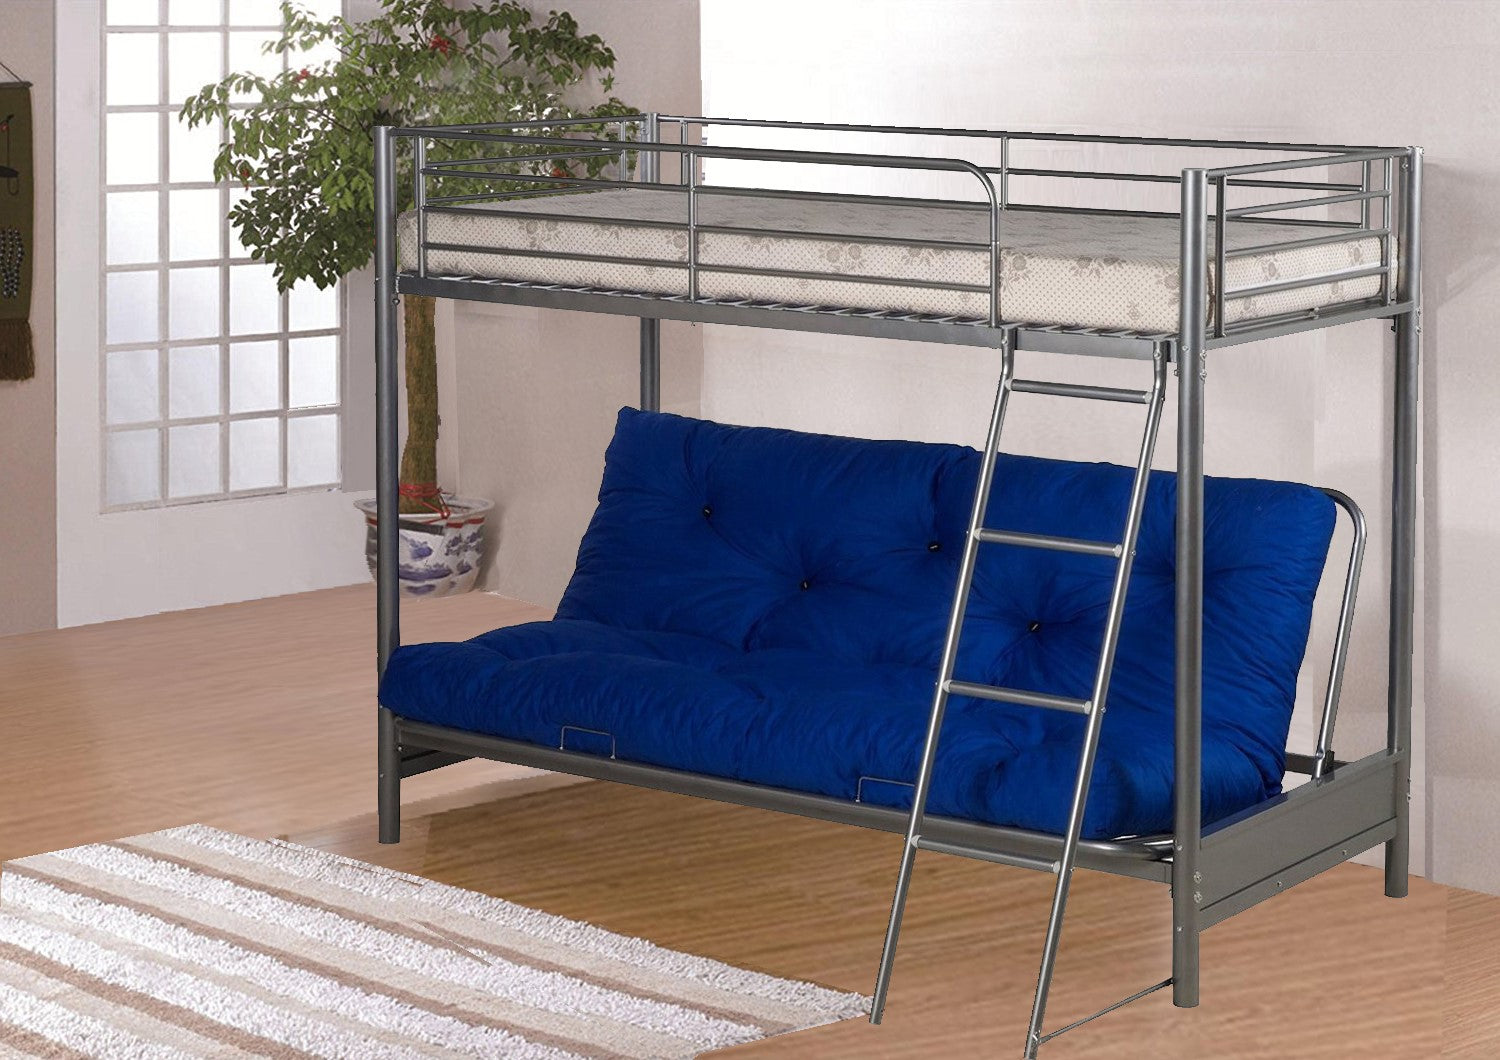 Futon Metal Bunk Bed for Kids